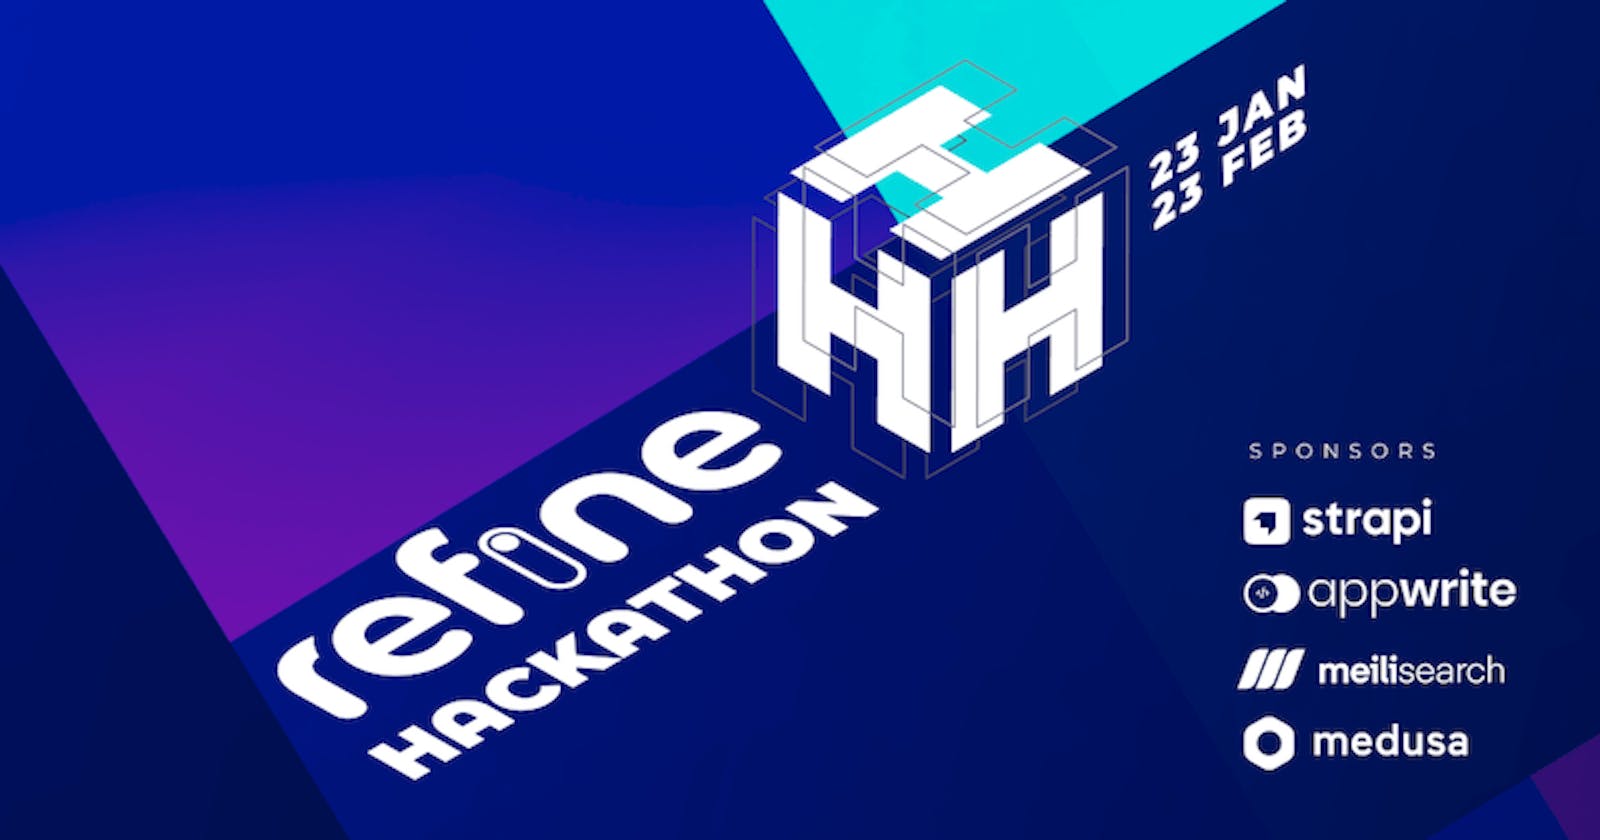 refine Hackathon with $1500 prize!